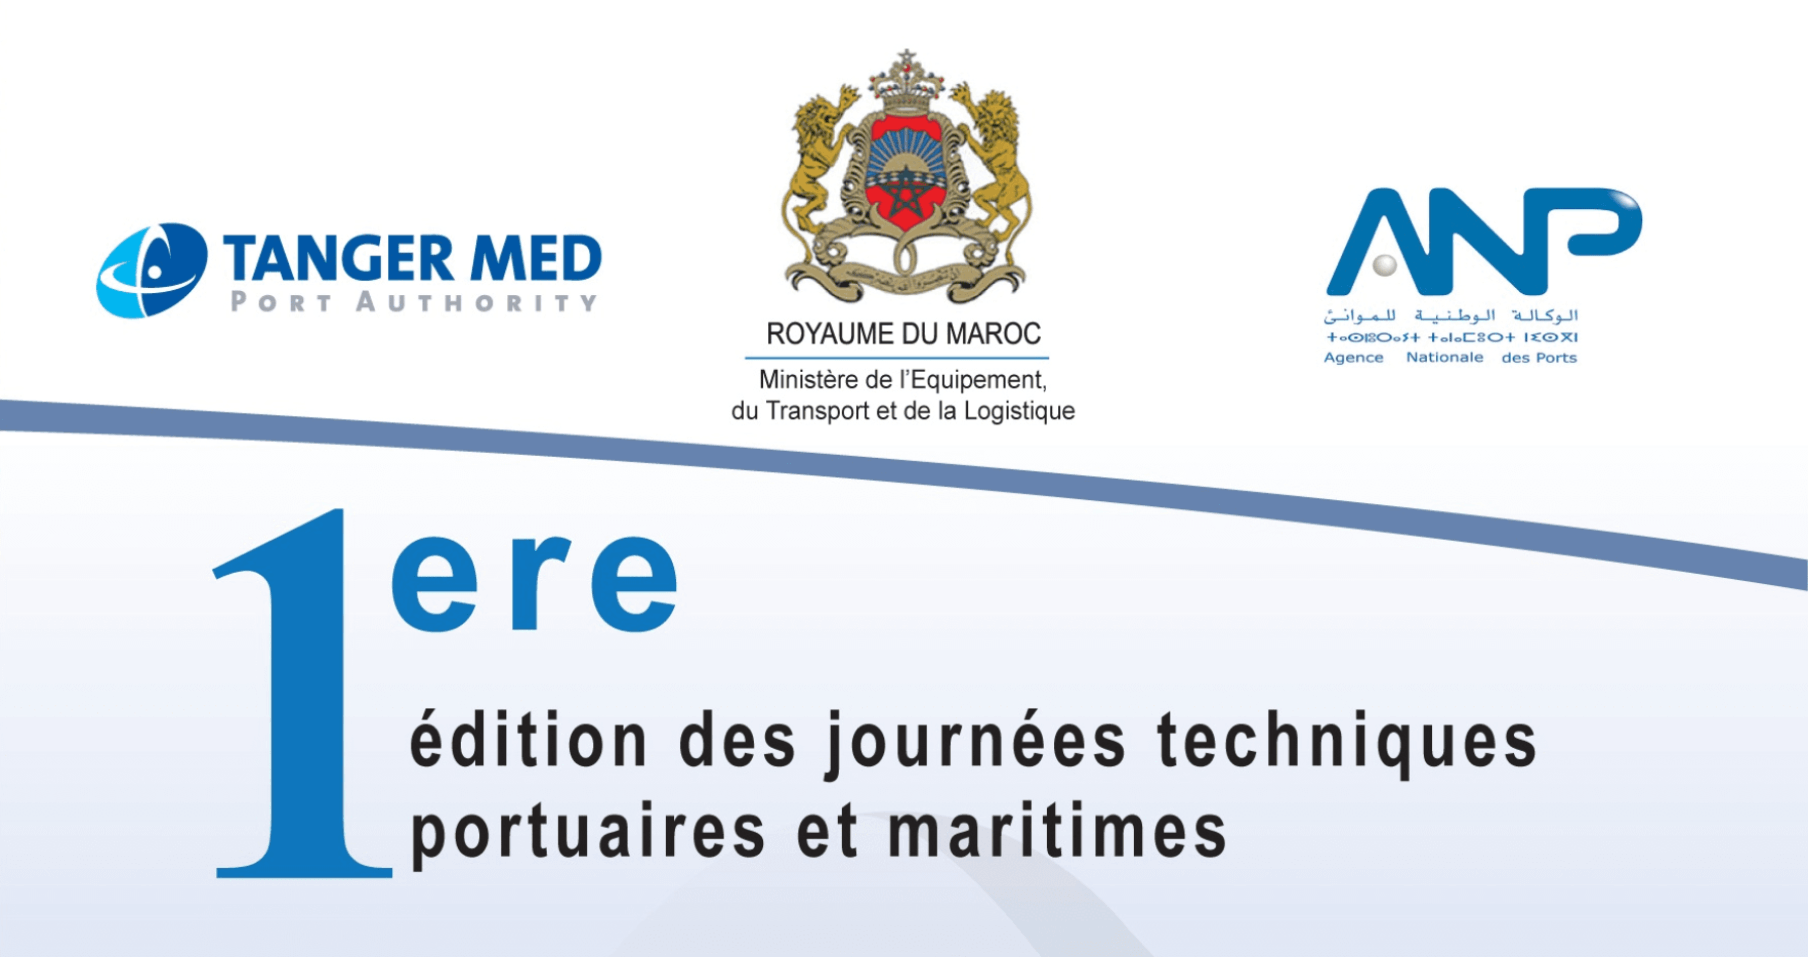 Première édition des journées techniques portuaires et maritimes du 25 au 27 mai 2016 au port Tanger Med